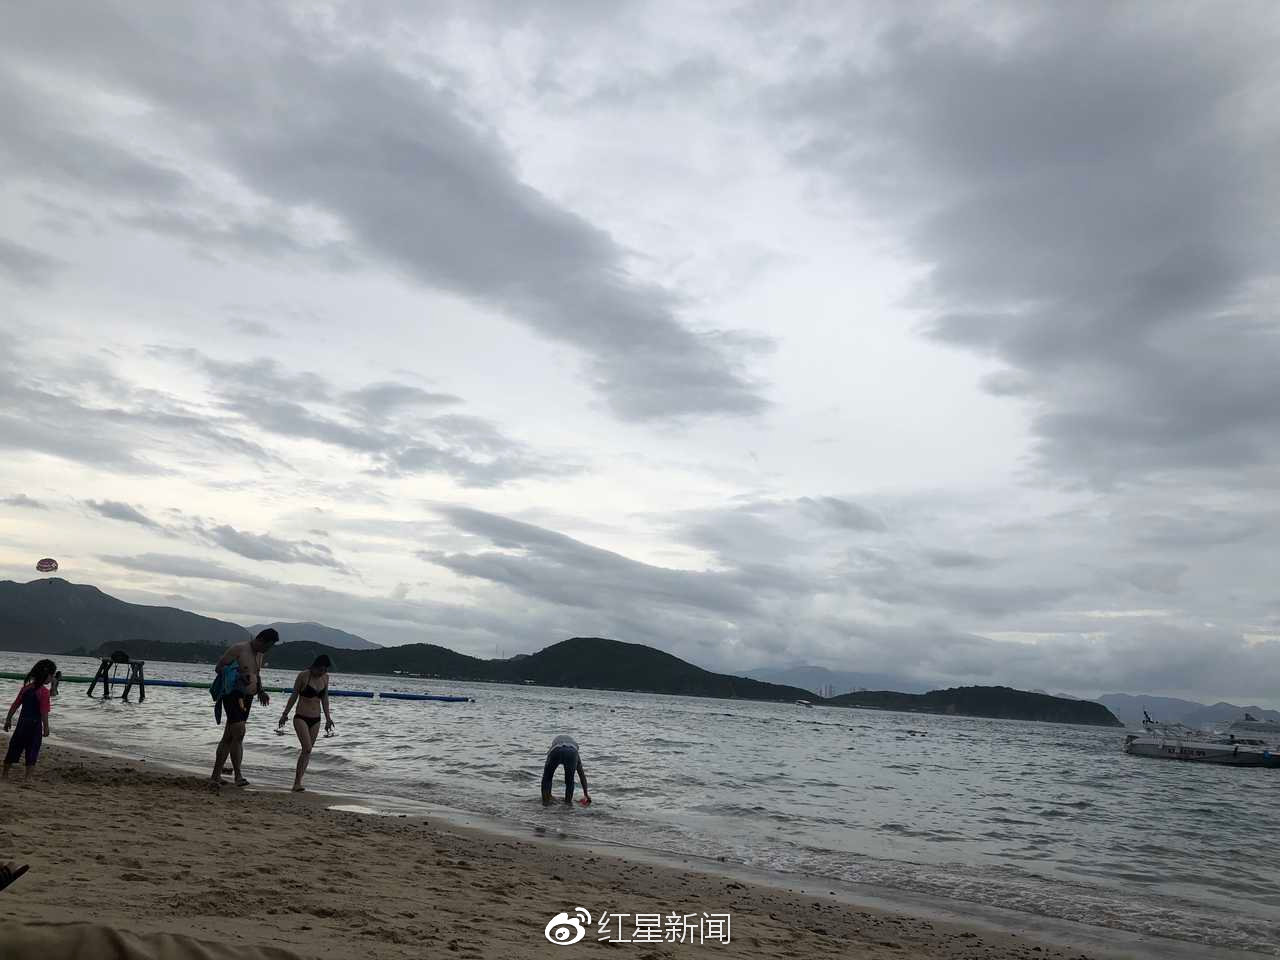 越南翻船事故 21名中国游客1死1伤 目击者:当天